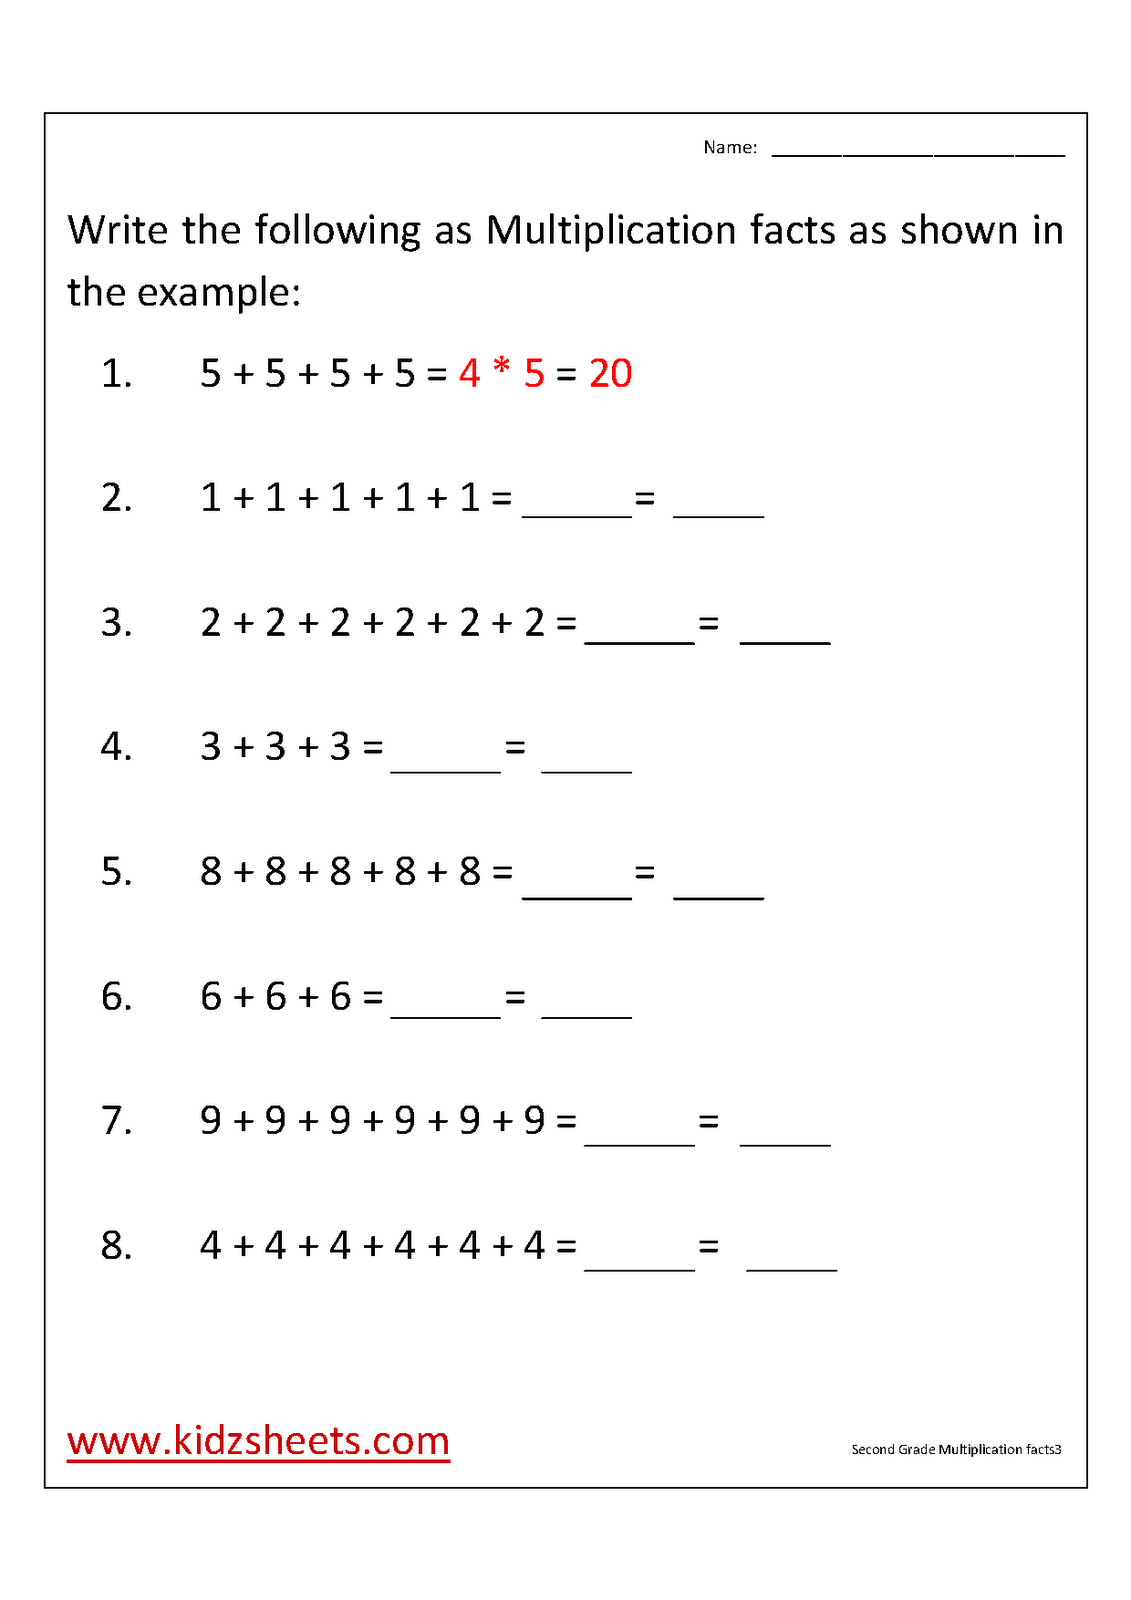 kidz-worksheets-second-grade-multiplication-facts-worksheet3